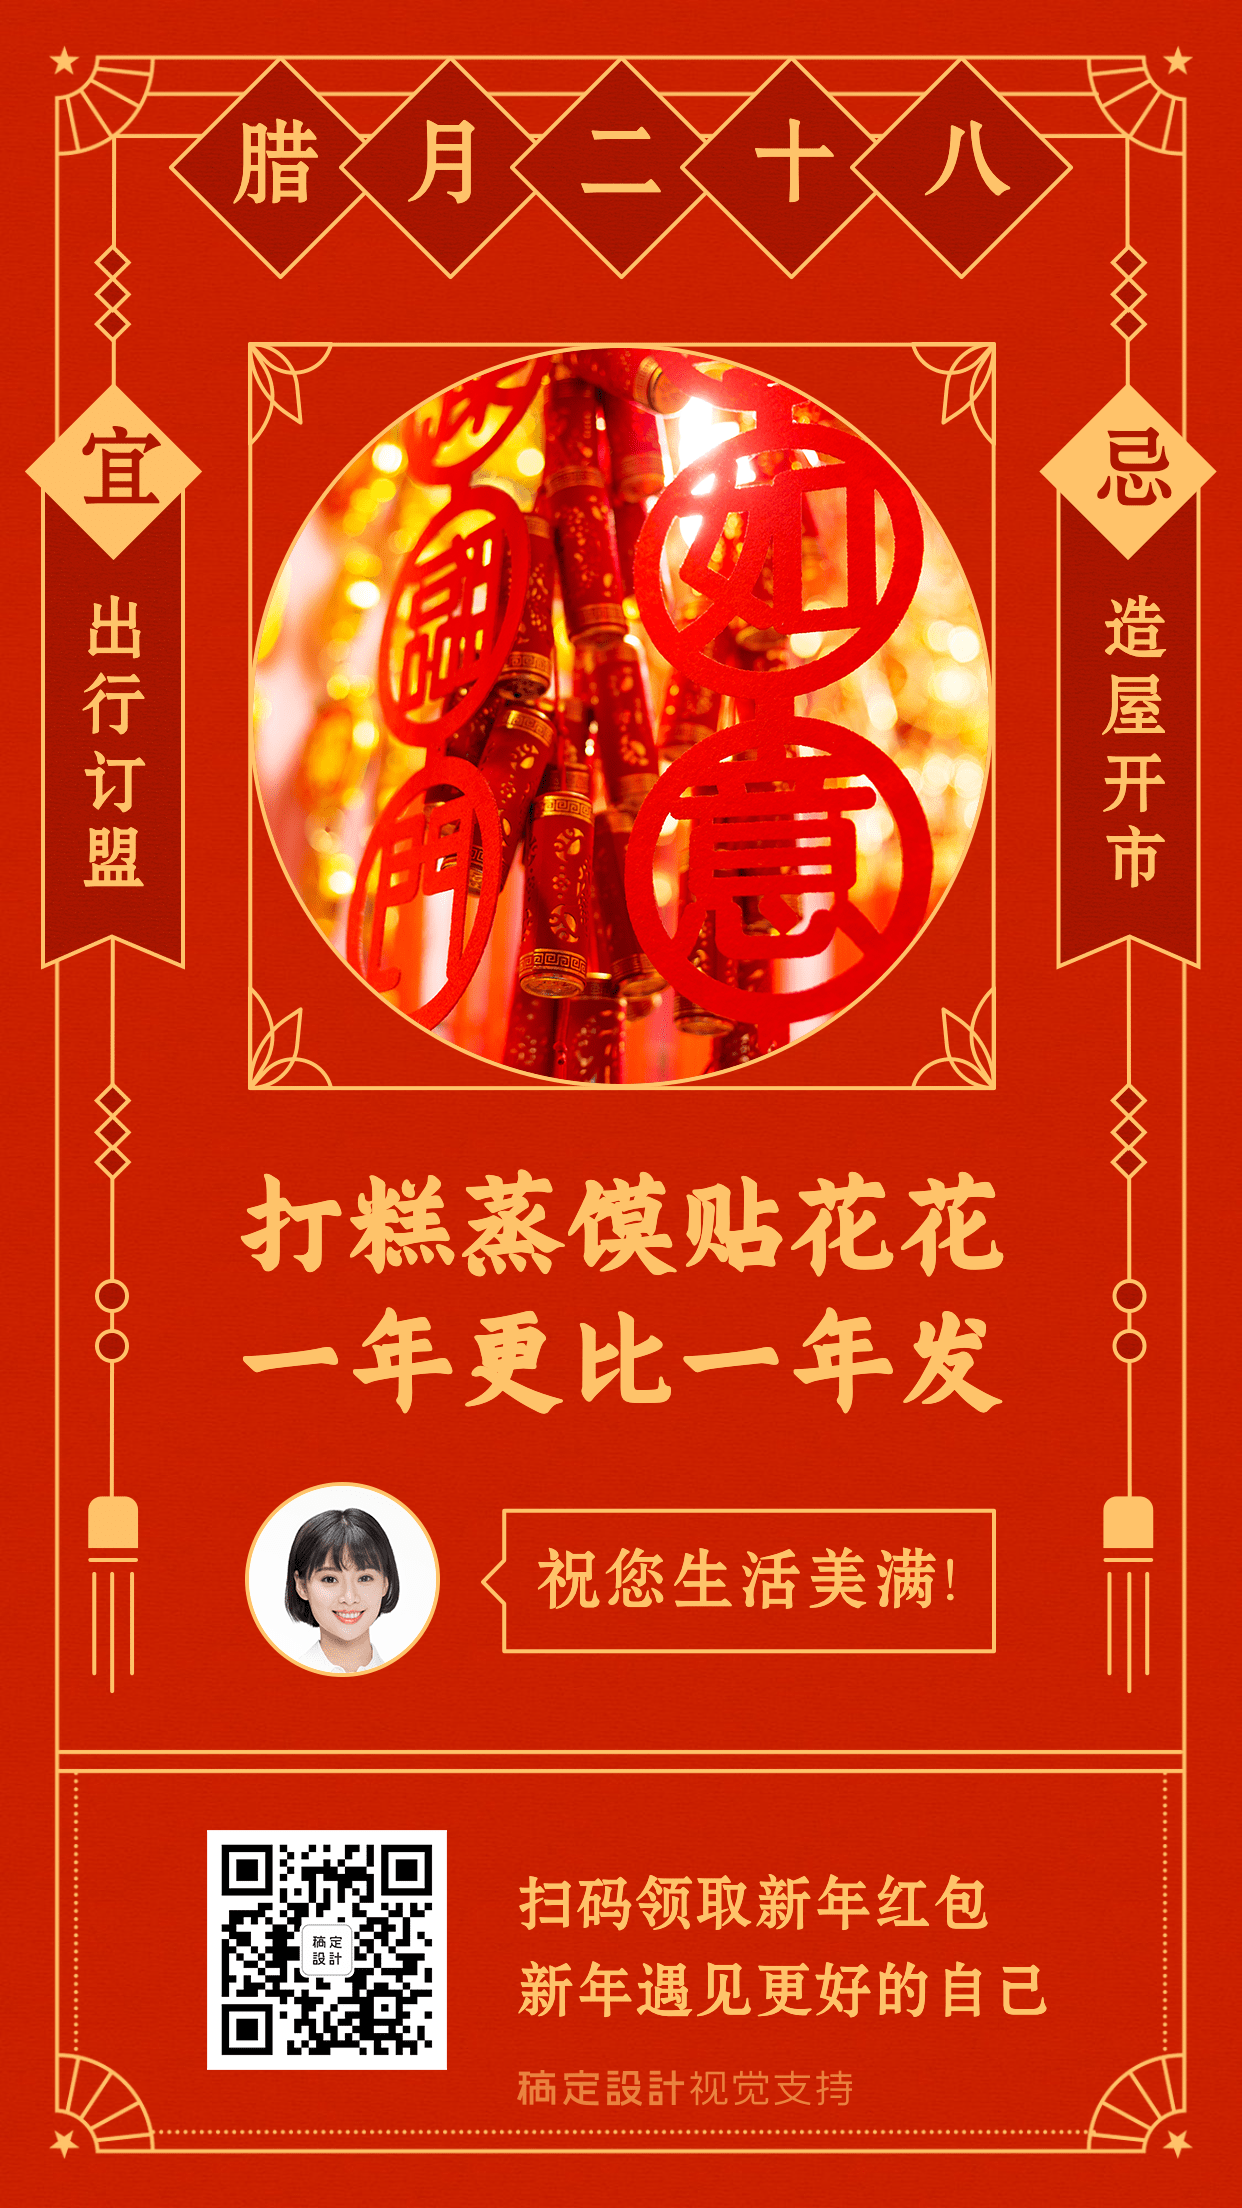 腊月二十八春节习俗提醒海报预览效果